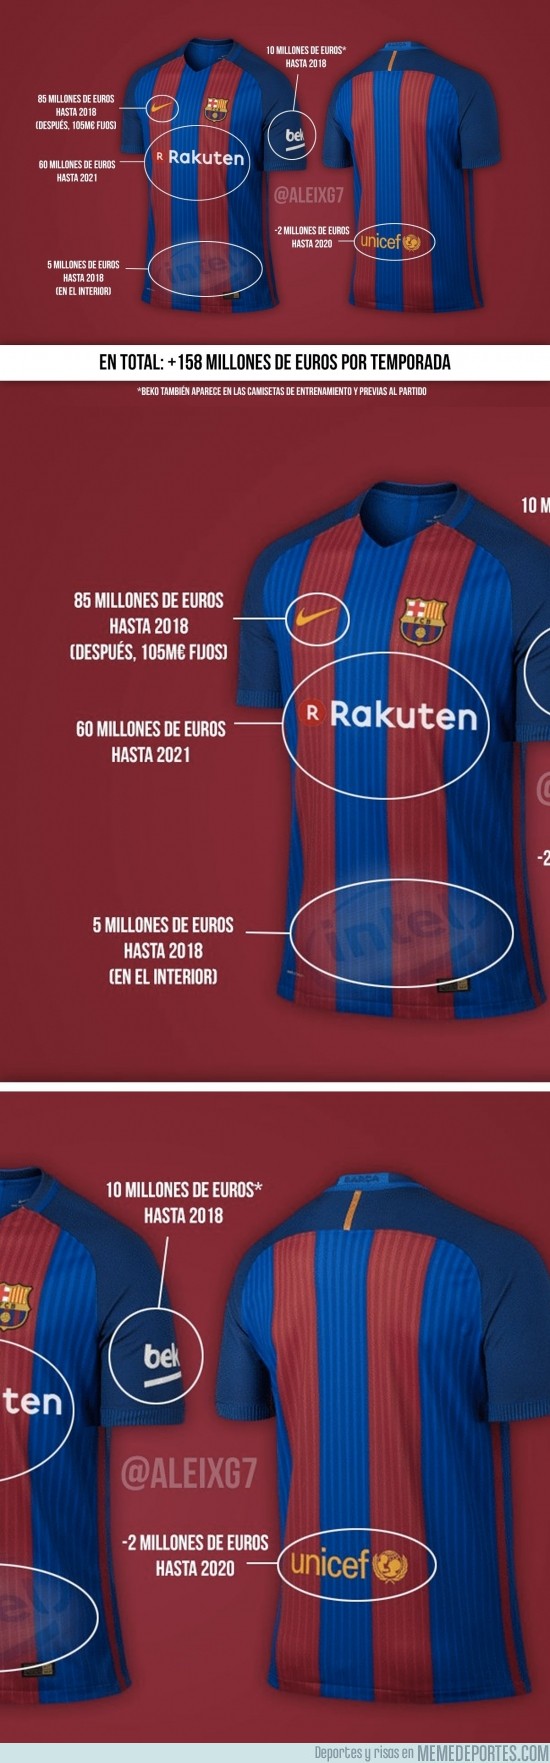 925144 - Tras el anuncio de Rakuten, ésta es la pasta que se lleva el Barça por publicidad en su camiseta